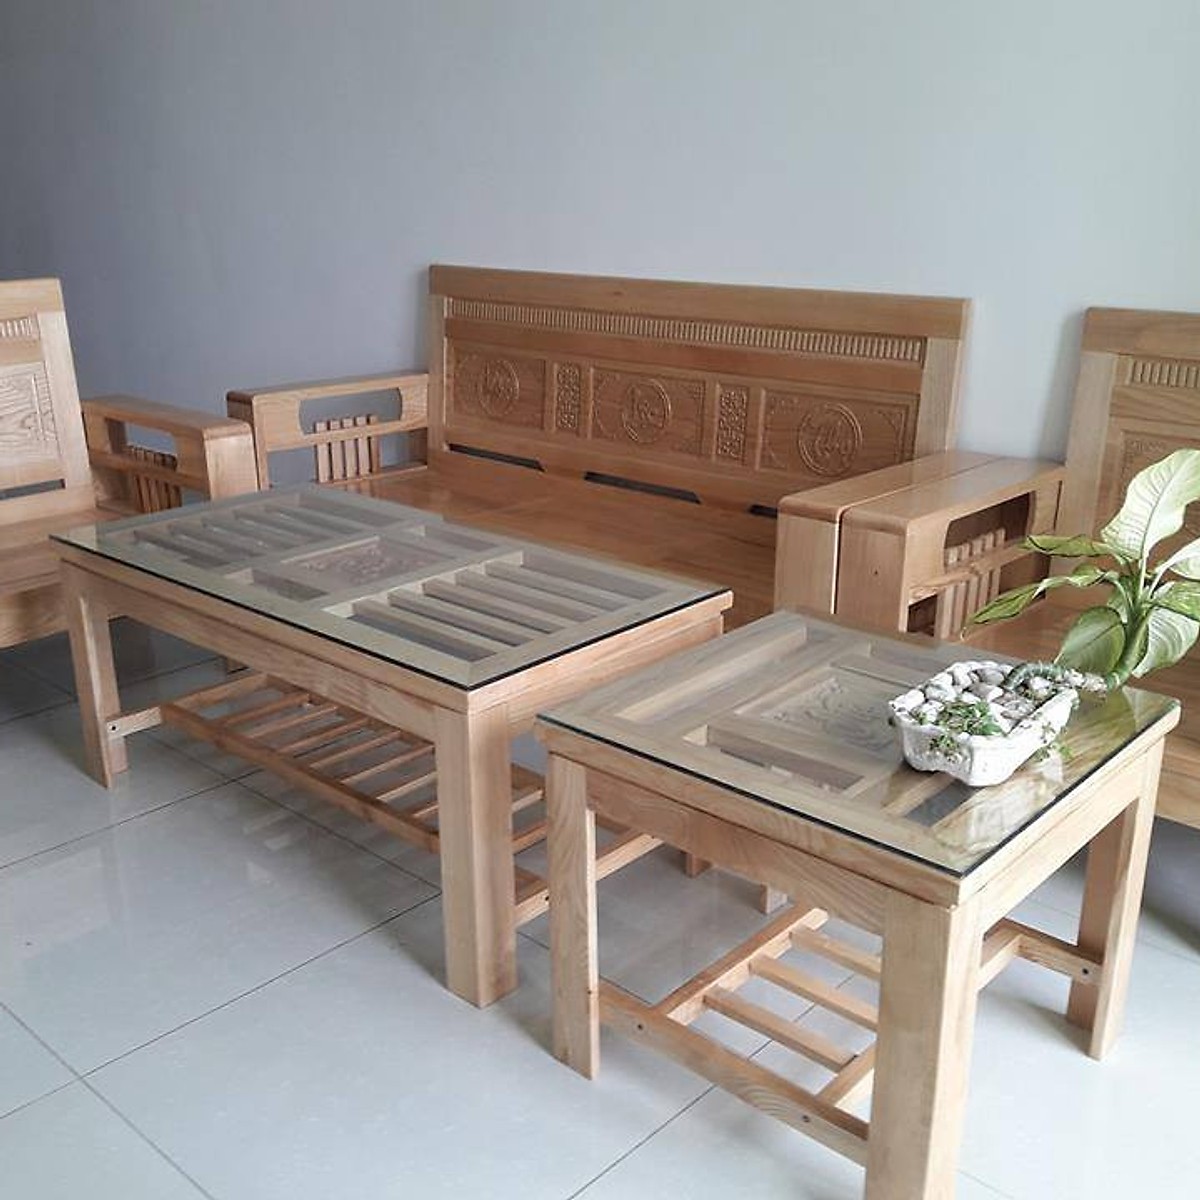 Bạn đang tìm kiếm bộ bàn ghế gỗ phòng khách giá rẻ? Cộng đồng C Việt sẽ giúp bạn với mức giá chỉ 3 triệu đồng. Tất cả được làm từ những chất liệu tốt nhất và đảm bảo sự bền vững và an toàn. Cùng với sự đảm bảo chất lượng cao, bạn sẽ không cần phải lo lắng về chi phí.